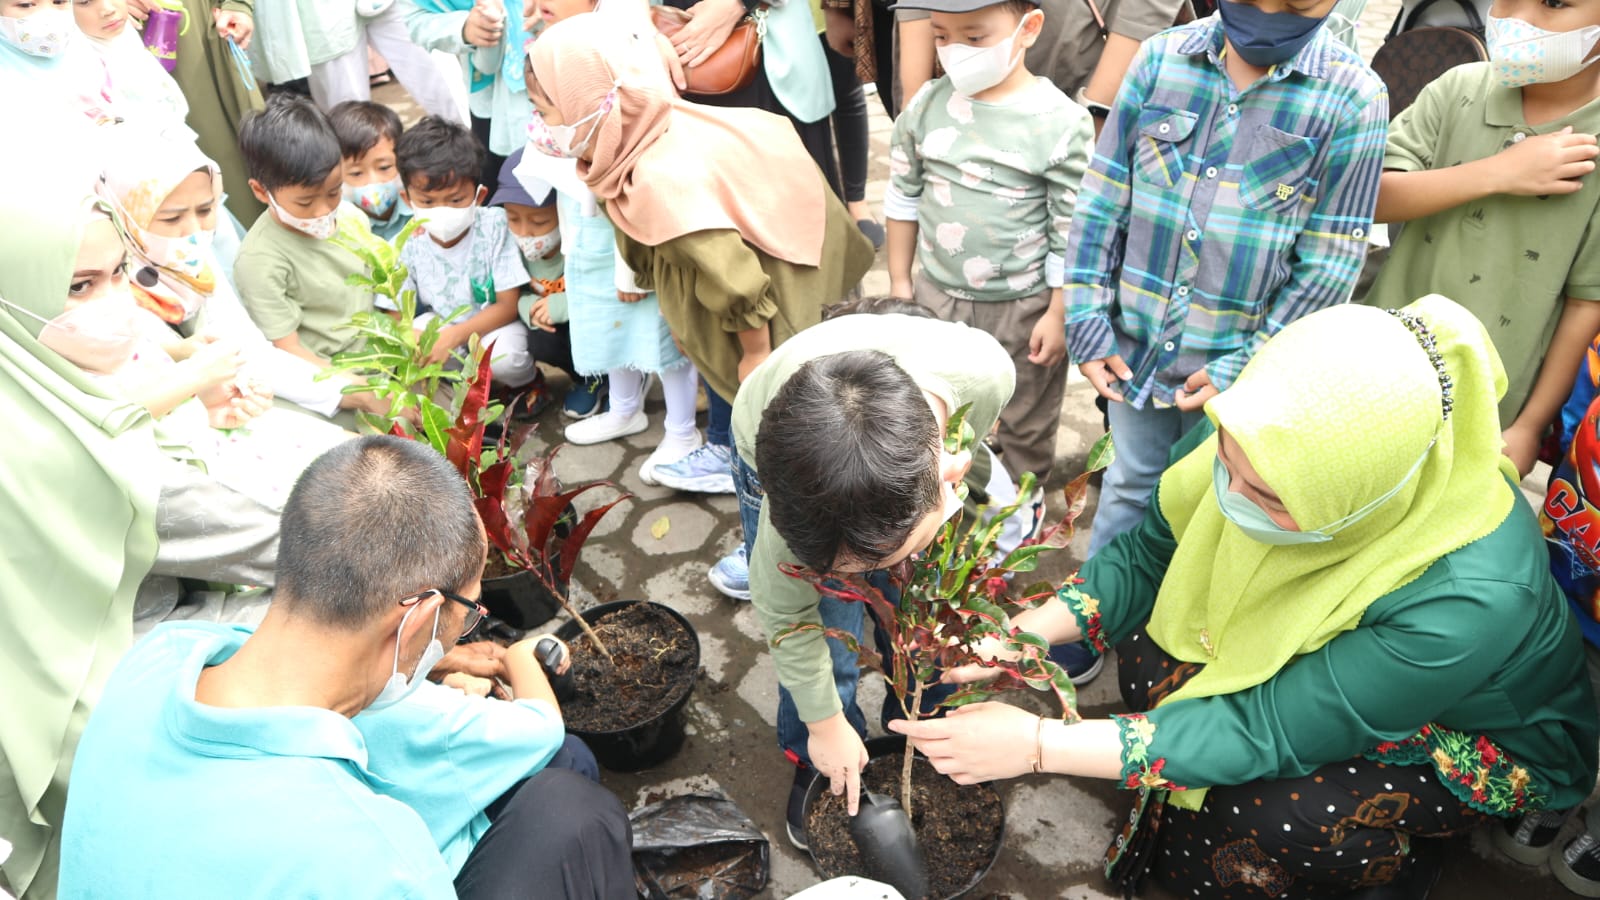 Serunya Bertualang bersama TK Smart Auladi Cirebon untuk Cintai Lingkungan